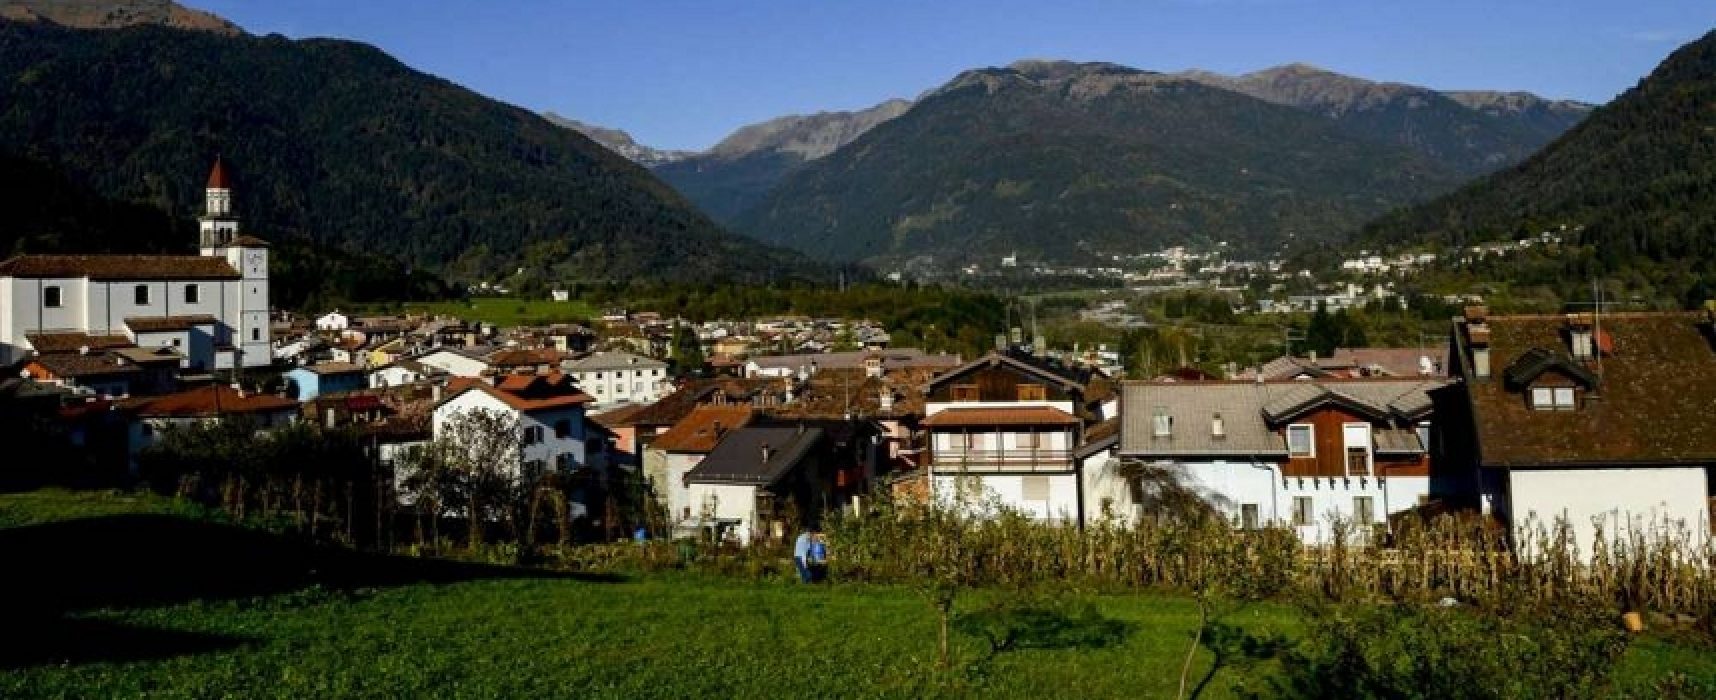 Bisceglie calcio: ritiro in Friuli, raduno il 12 luglio al “Ventura”